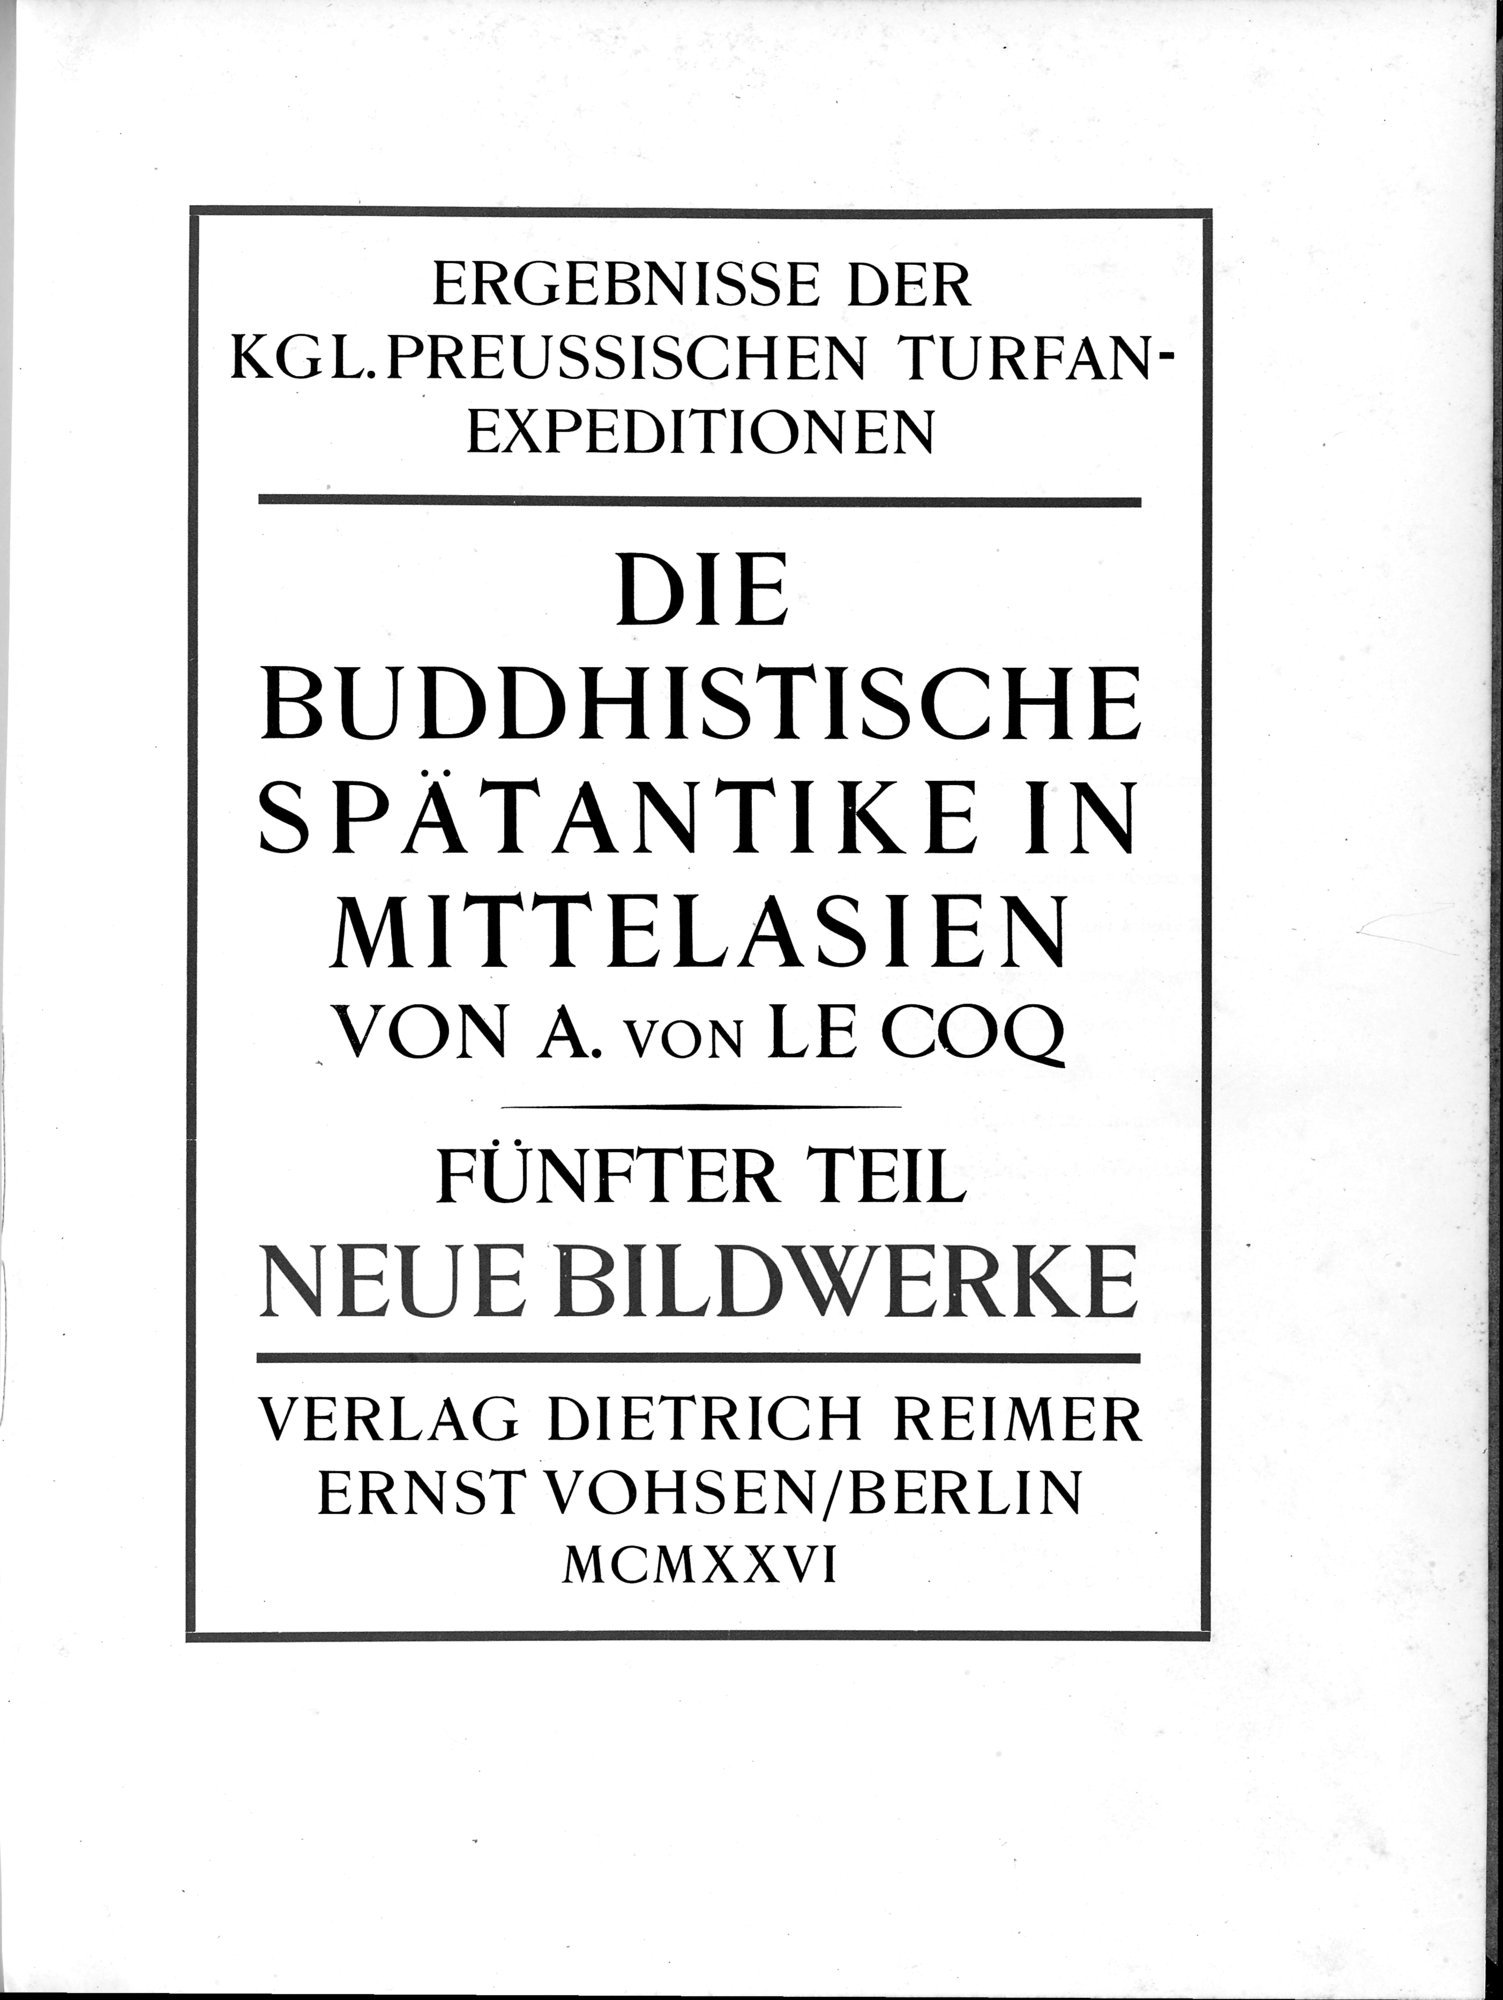 Die Buddhistische Spätantike in Mittelasien : vol.5 / Page 7 (Grayscale High Resolution Image)